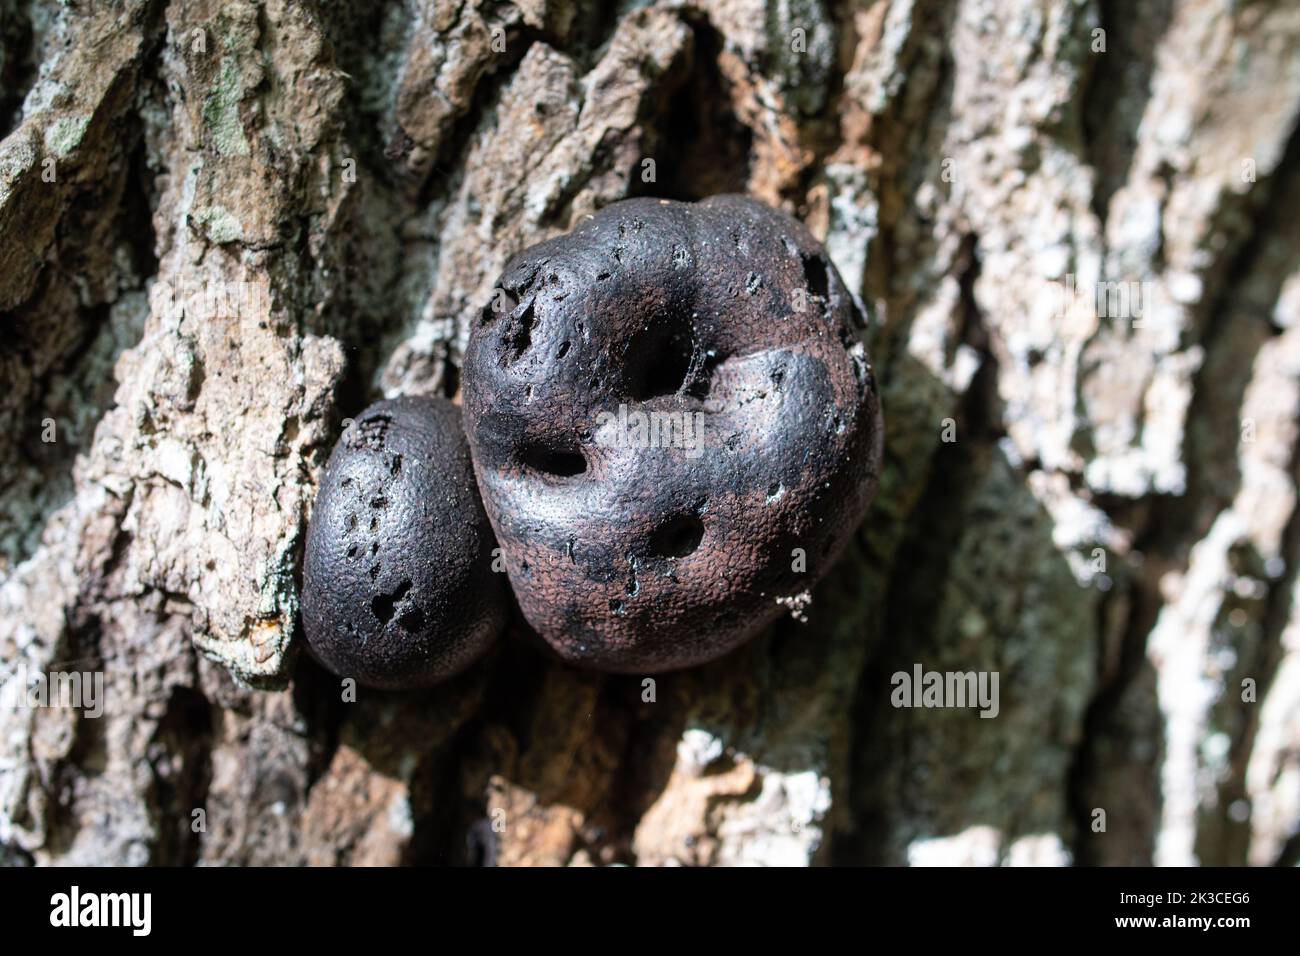 Il fungo della torta del re Alfred fingi (Daldinia concentrica, anche chiamato palle di crampi o fungo di carbone) su un albero durante l'autunno, Regno Unito Foto Stock